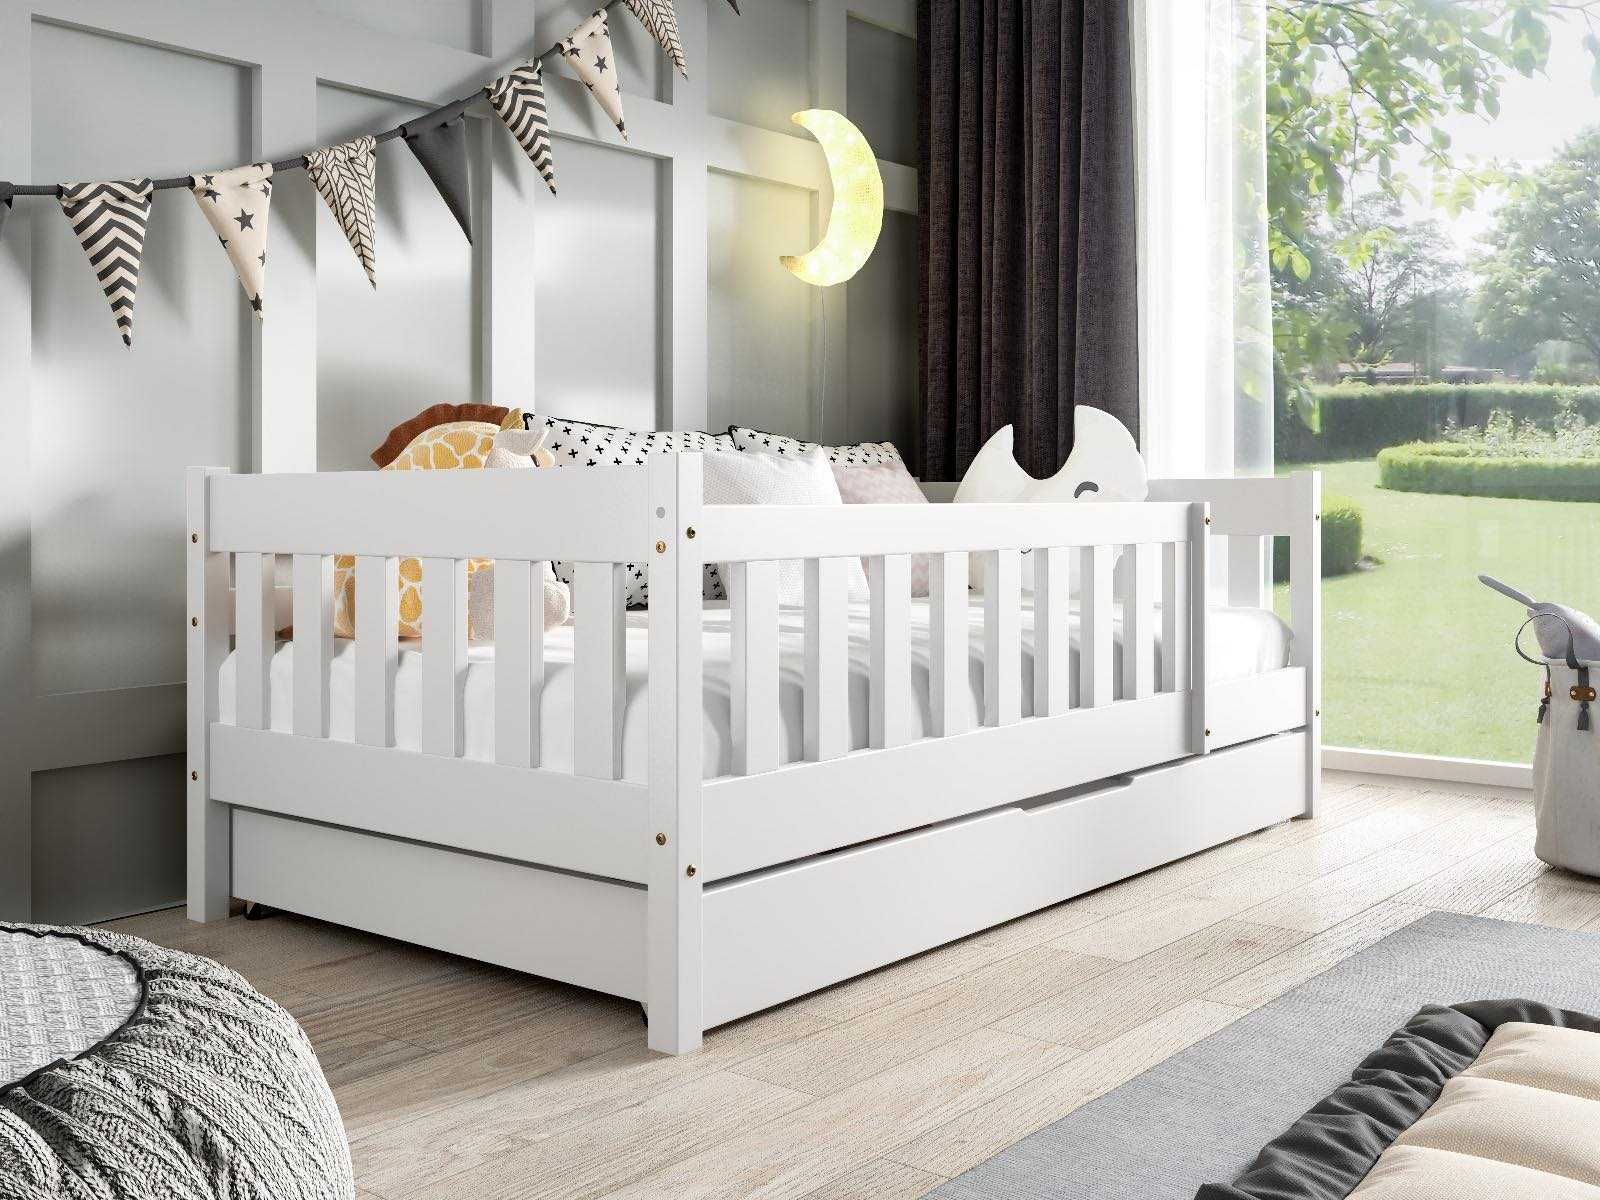 Łóżko dla dzieci POLA klasyczne drewniane - materac w zestawie!